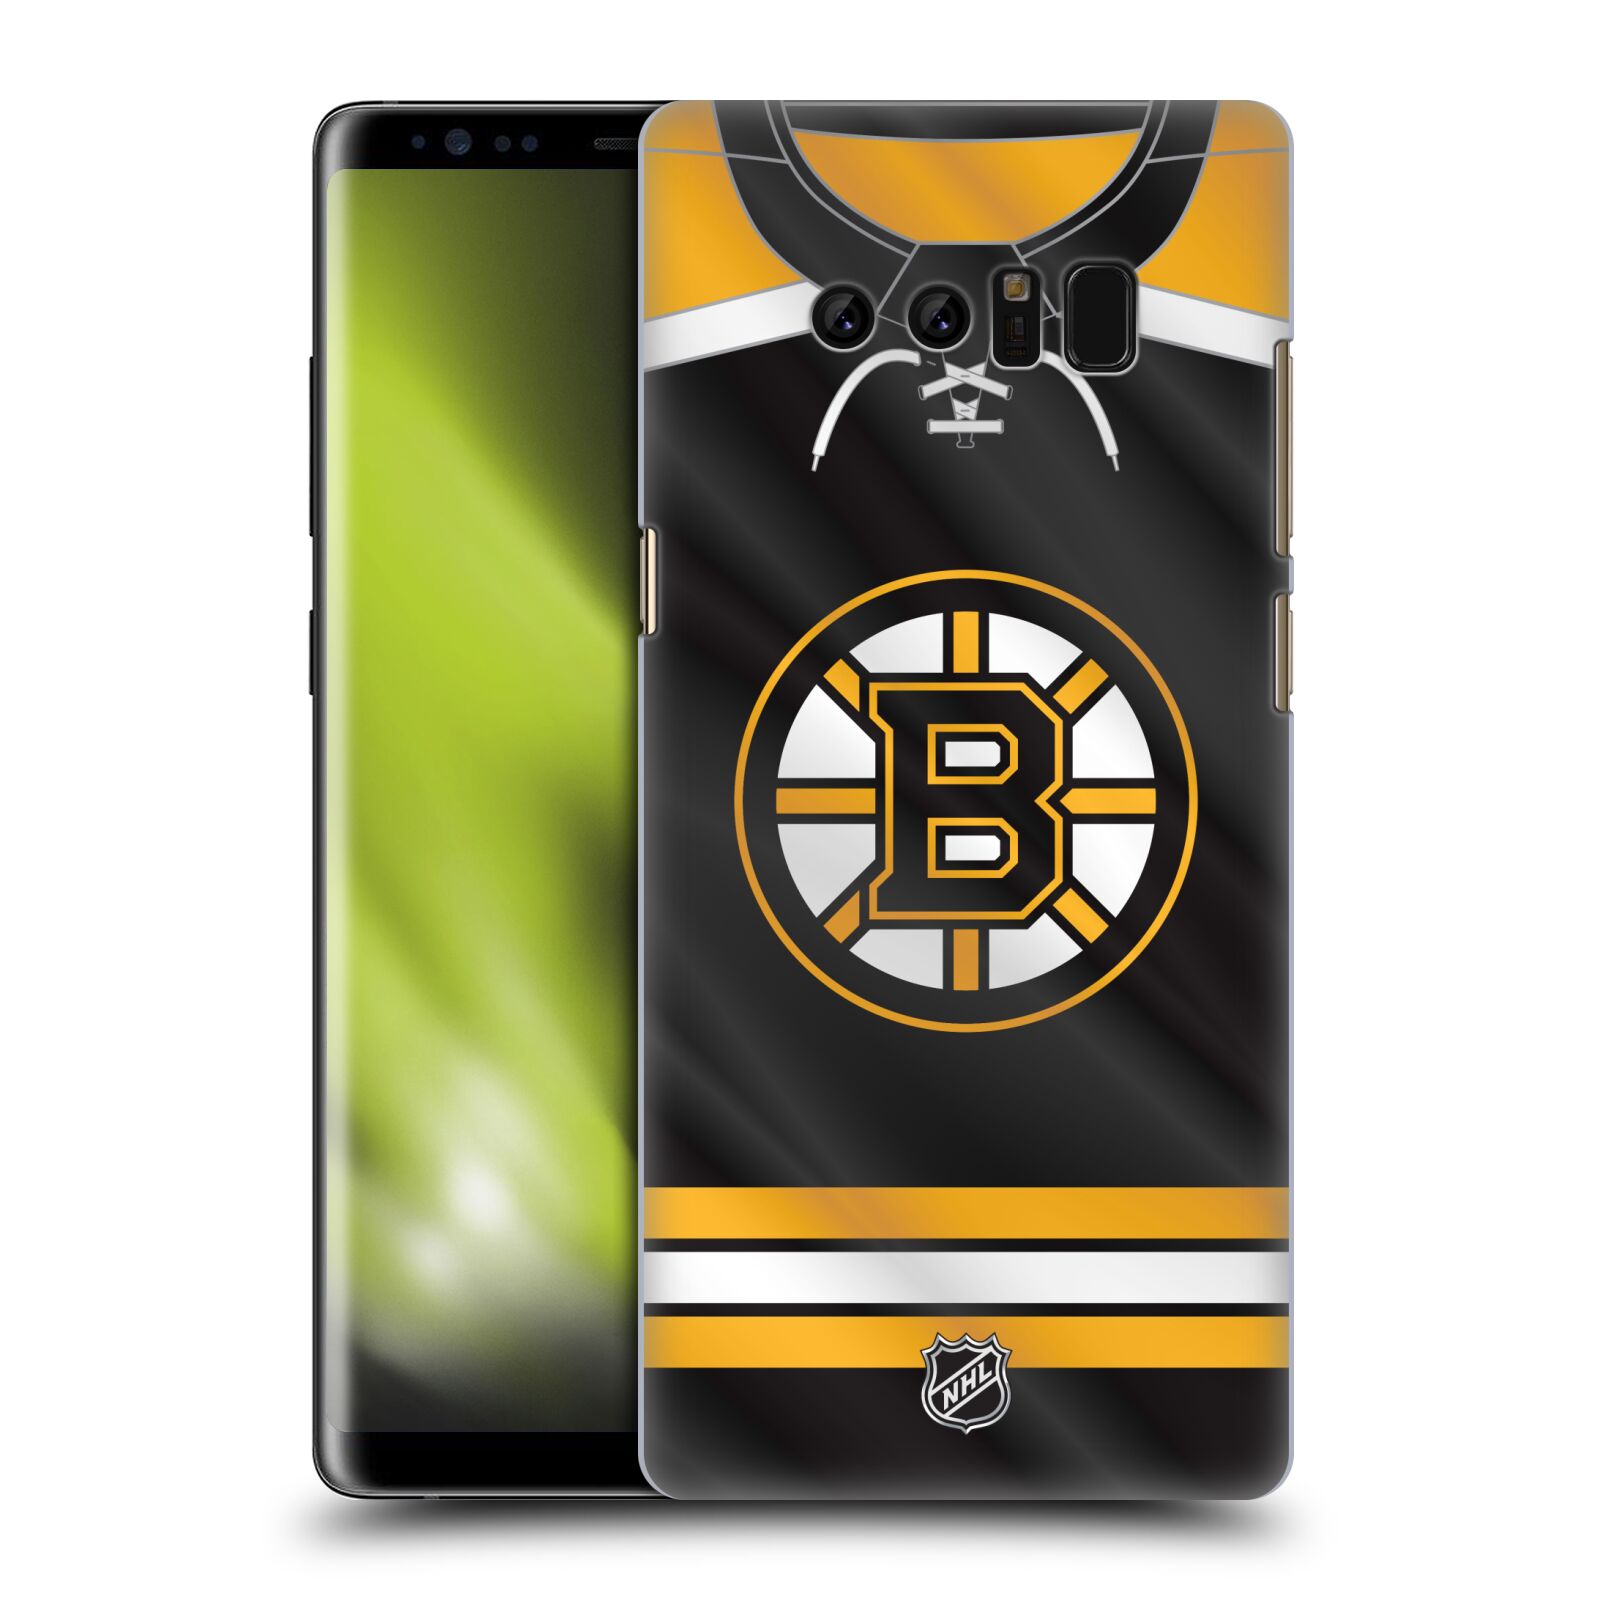 Pouzdro na mobil Samsung Galaxy Note 8 - HEAD CASE - Hokej NHL - Boston Bruins - Hokejový dres